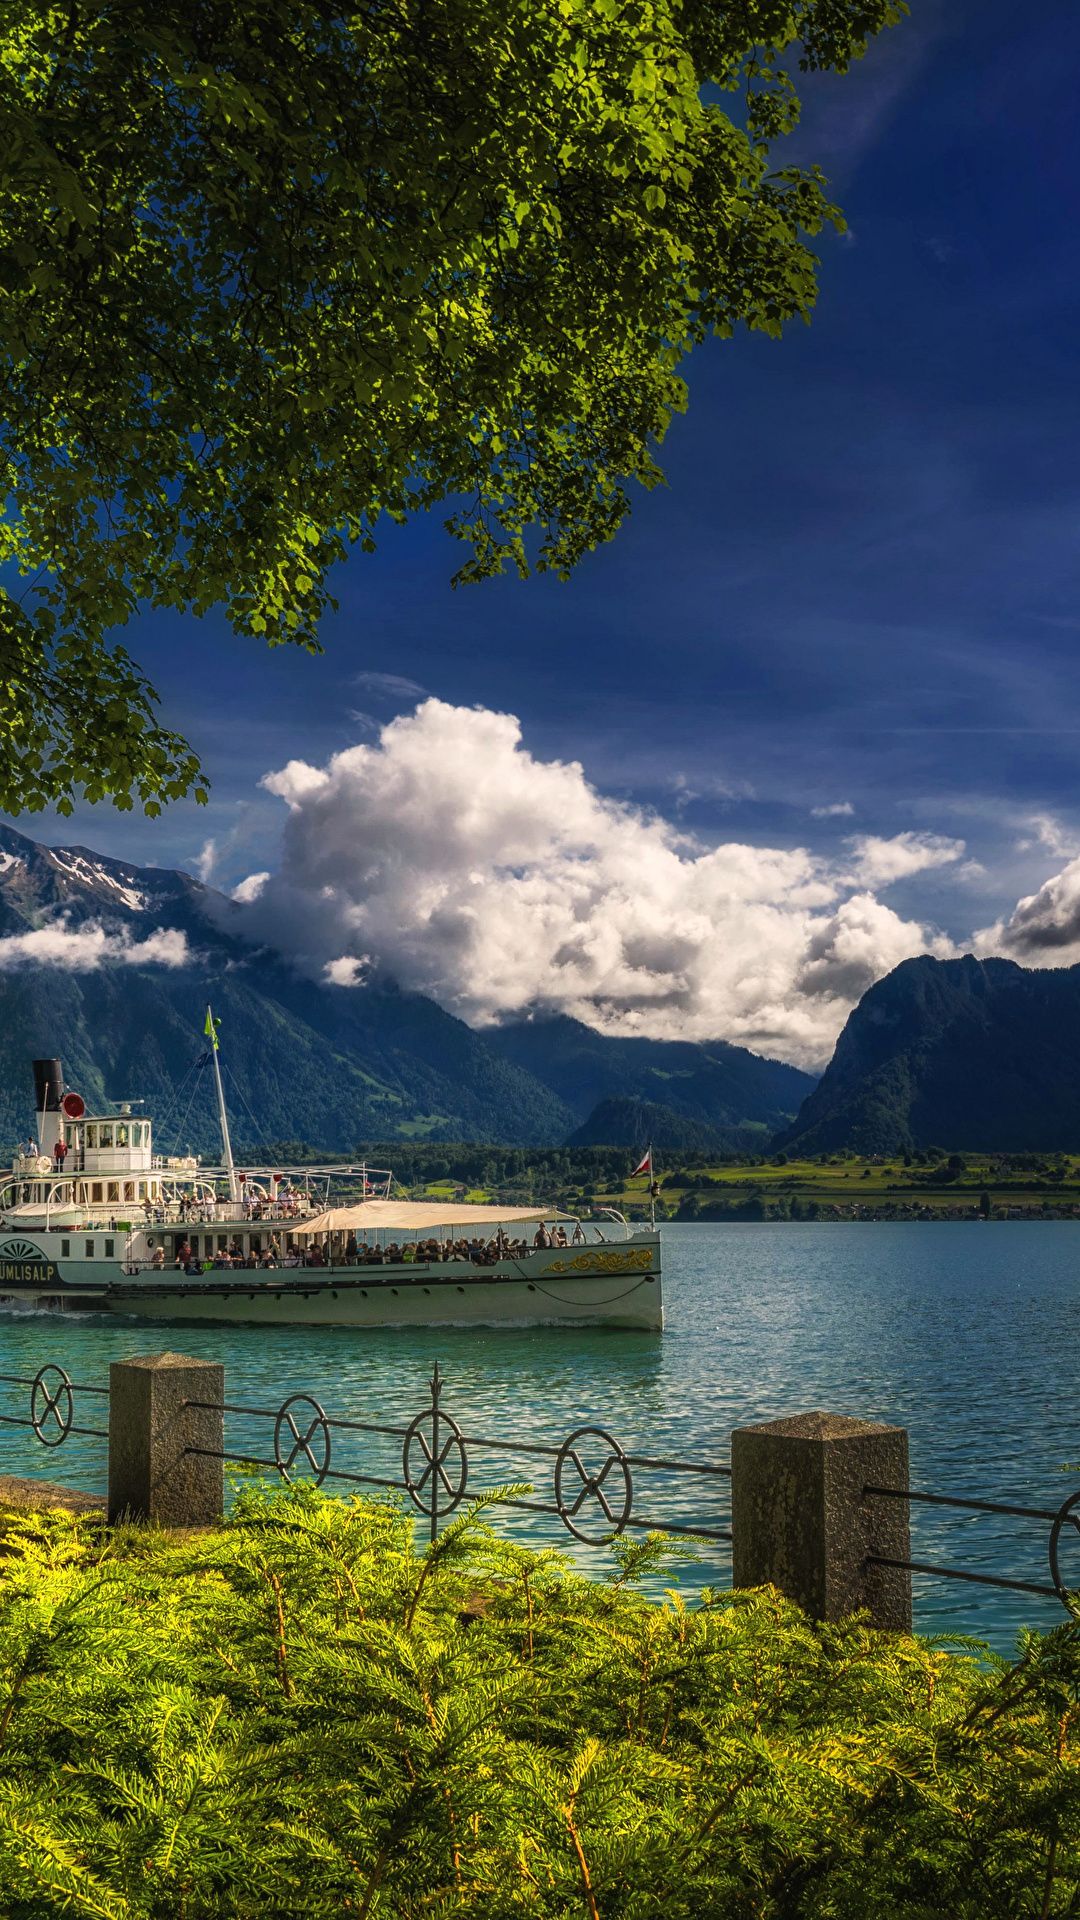 دانلود عکس جدید کشتی تفریحی در سوئیس برای پس زمینه